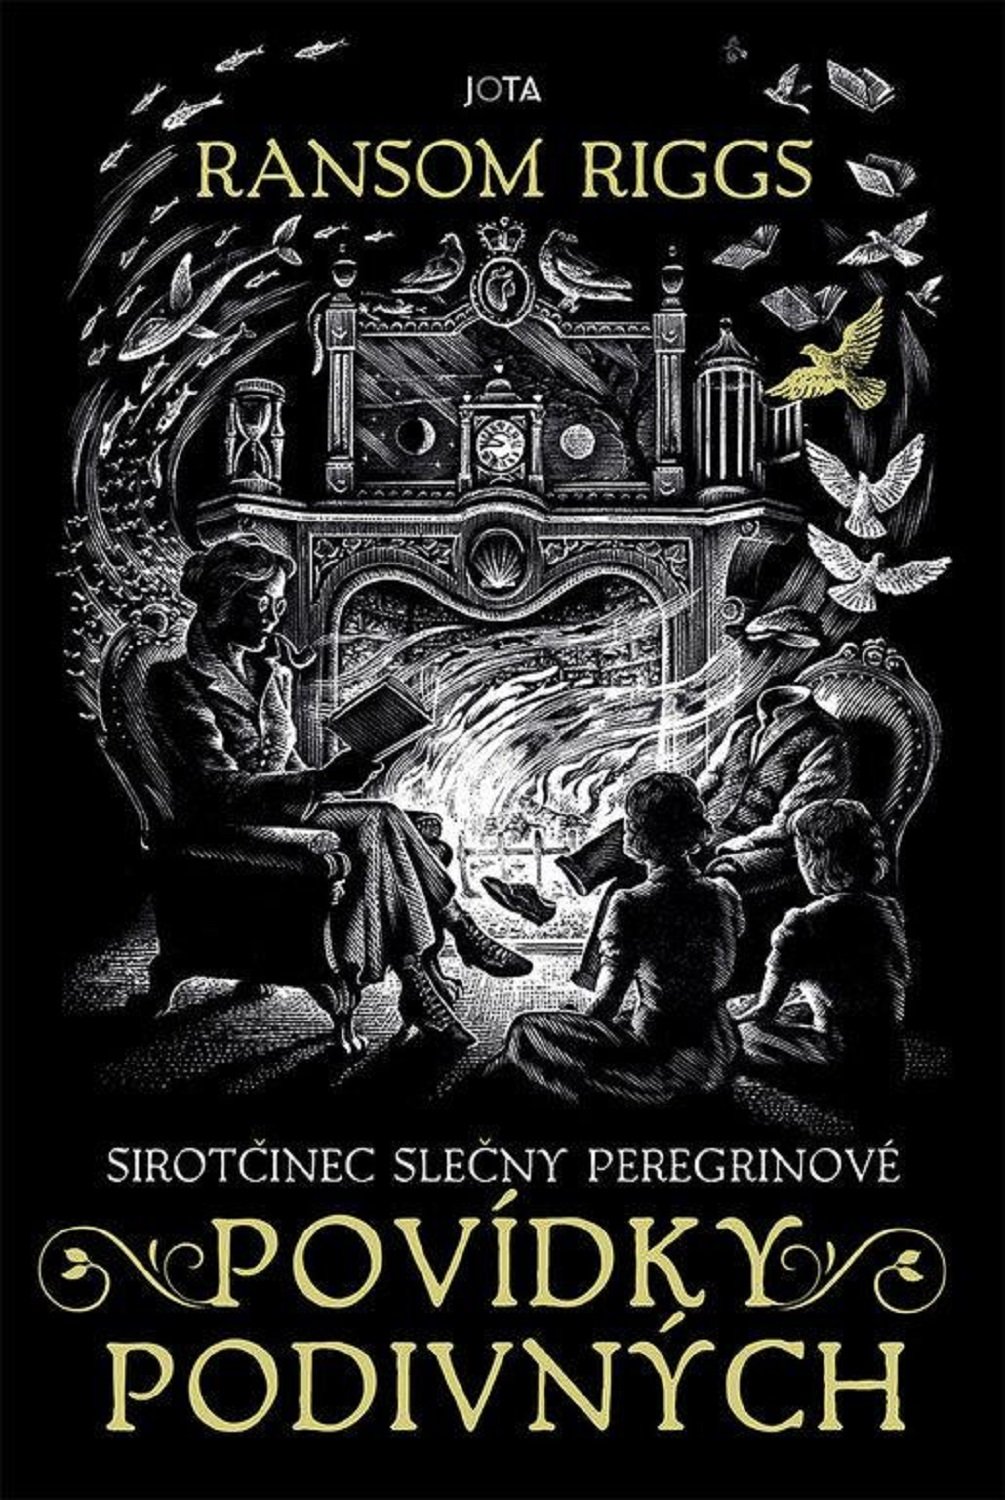 Sirotčinec slečny Peregrinové: Povídky podivných, 2. vydání - Ransom Riggs